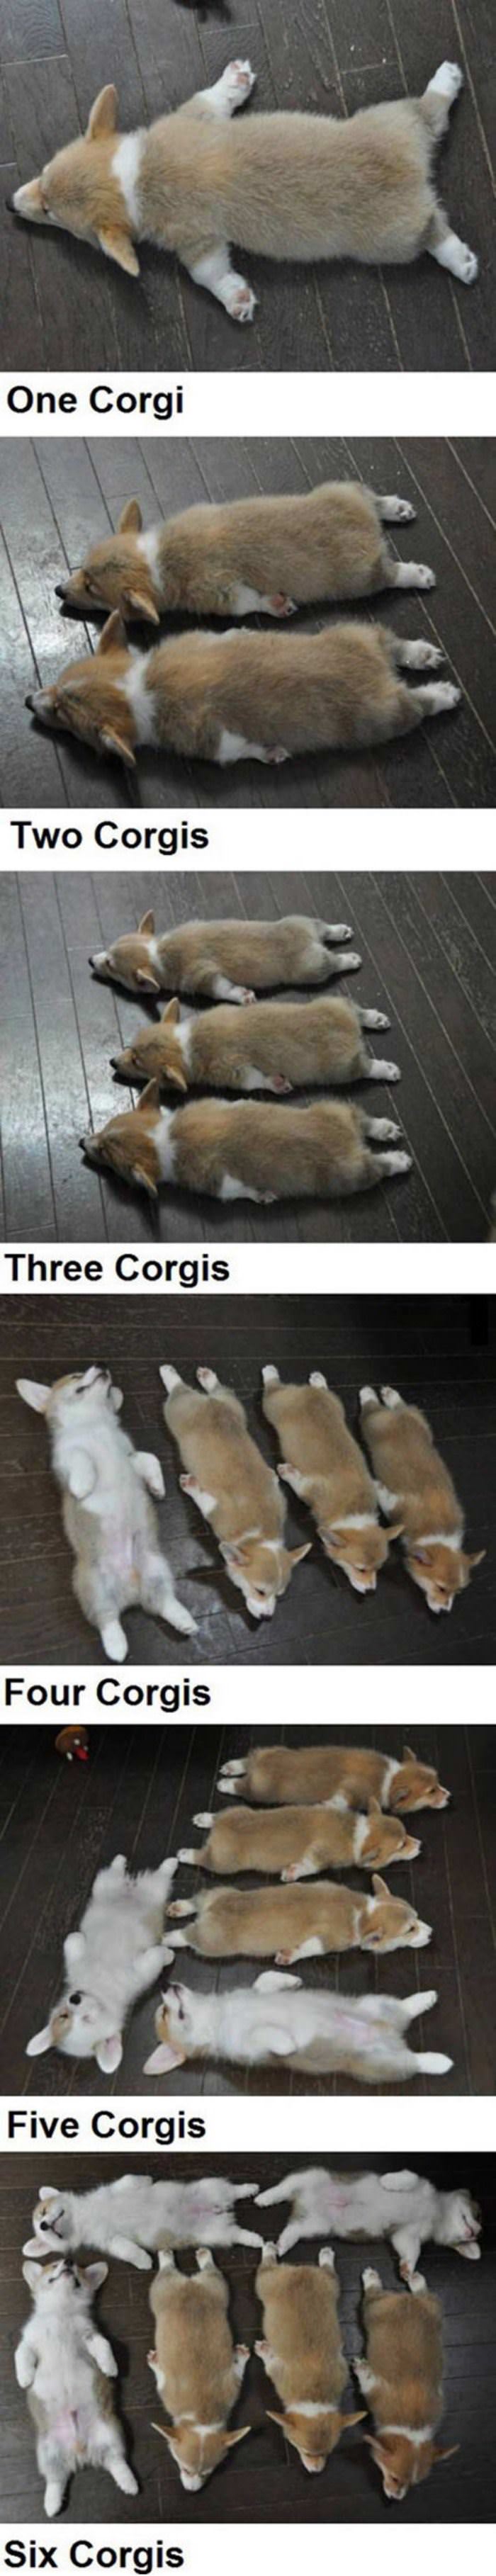 corgis funny picture